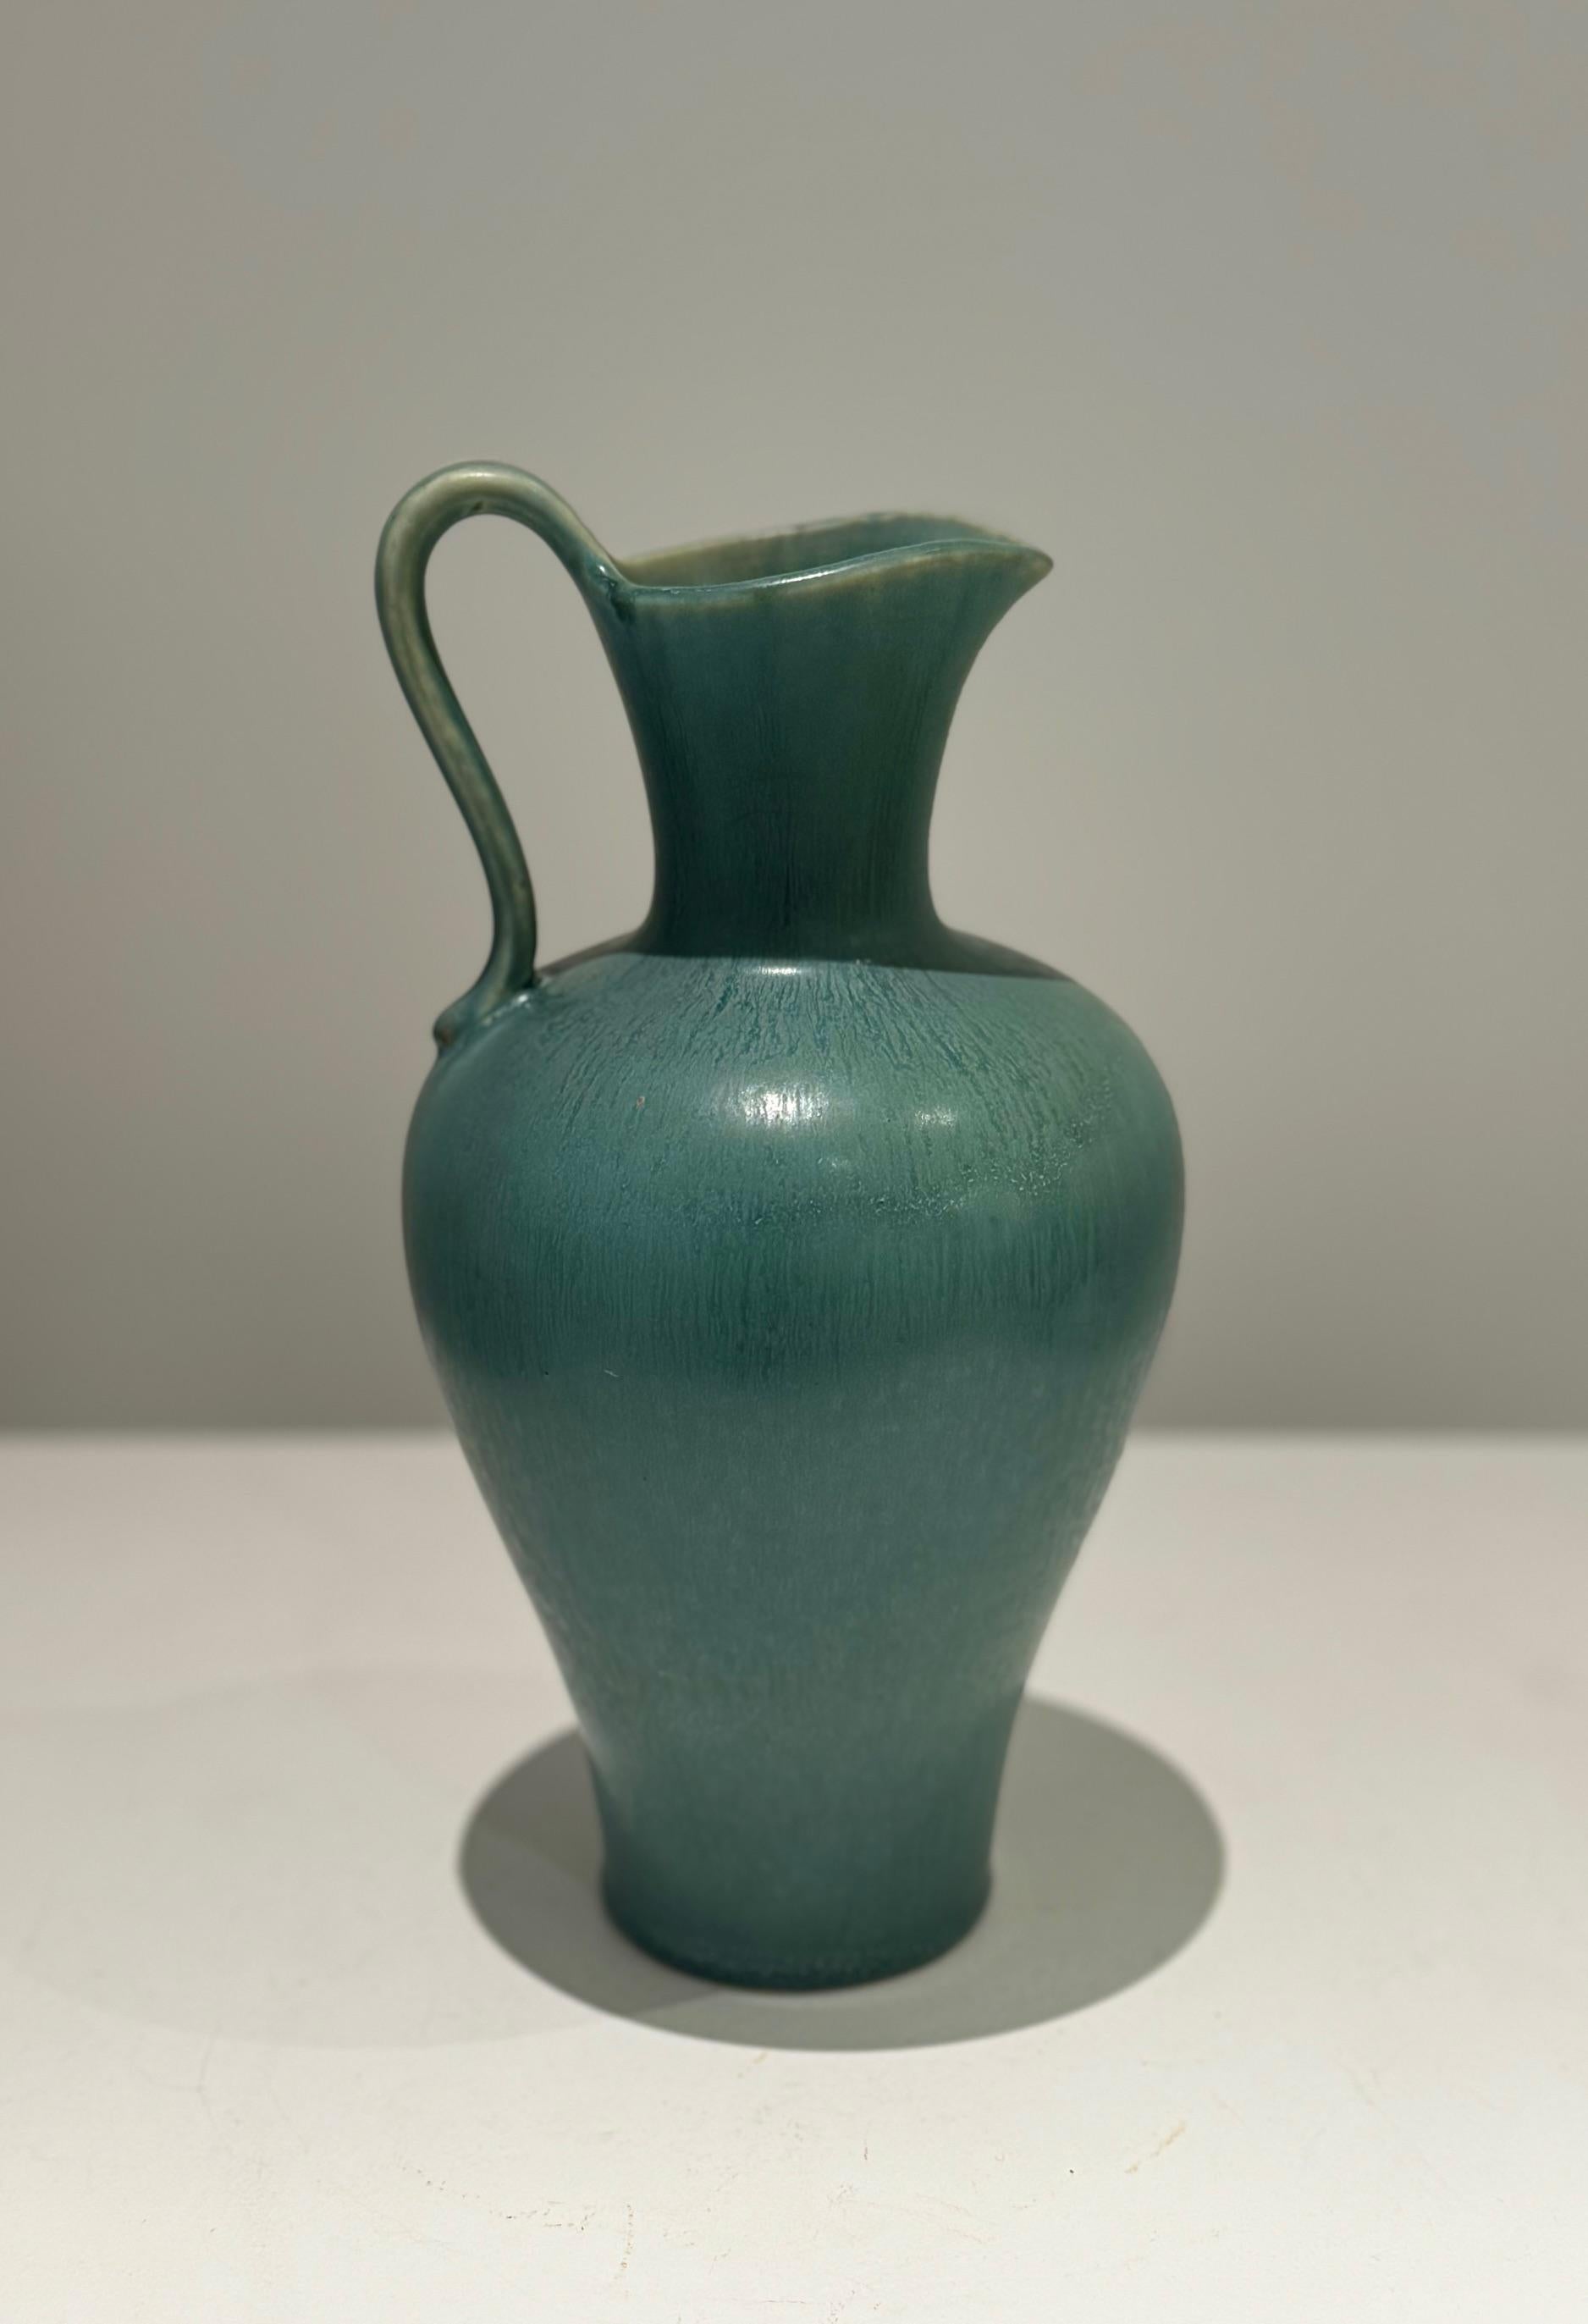 Scandinavian Midcentury Ceramic jug vase in har fur glaze green enamel
Signed on back with 